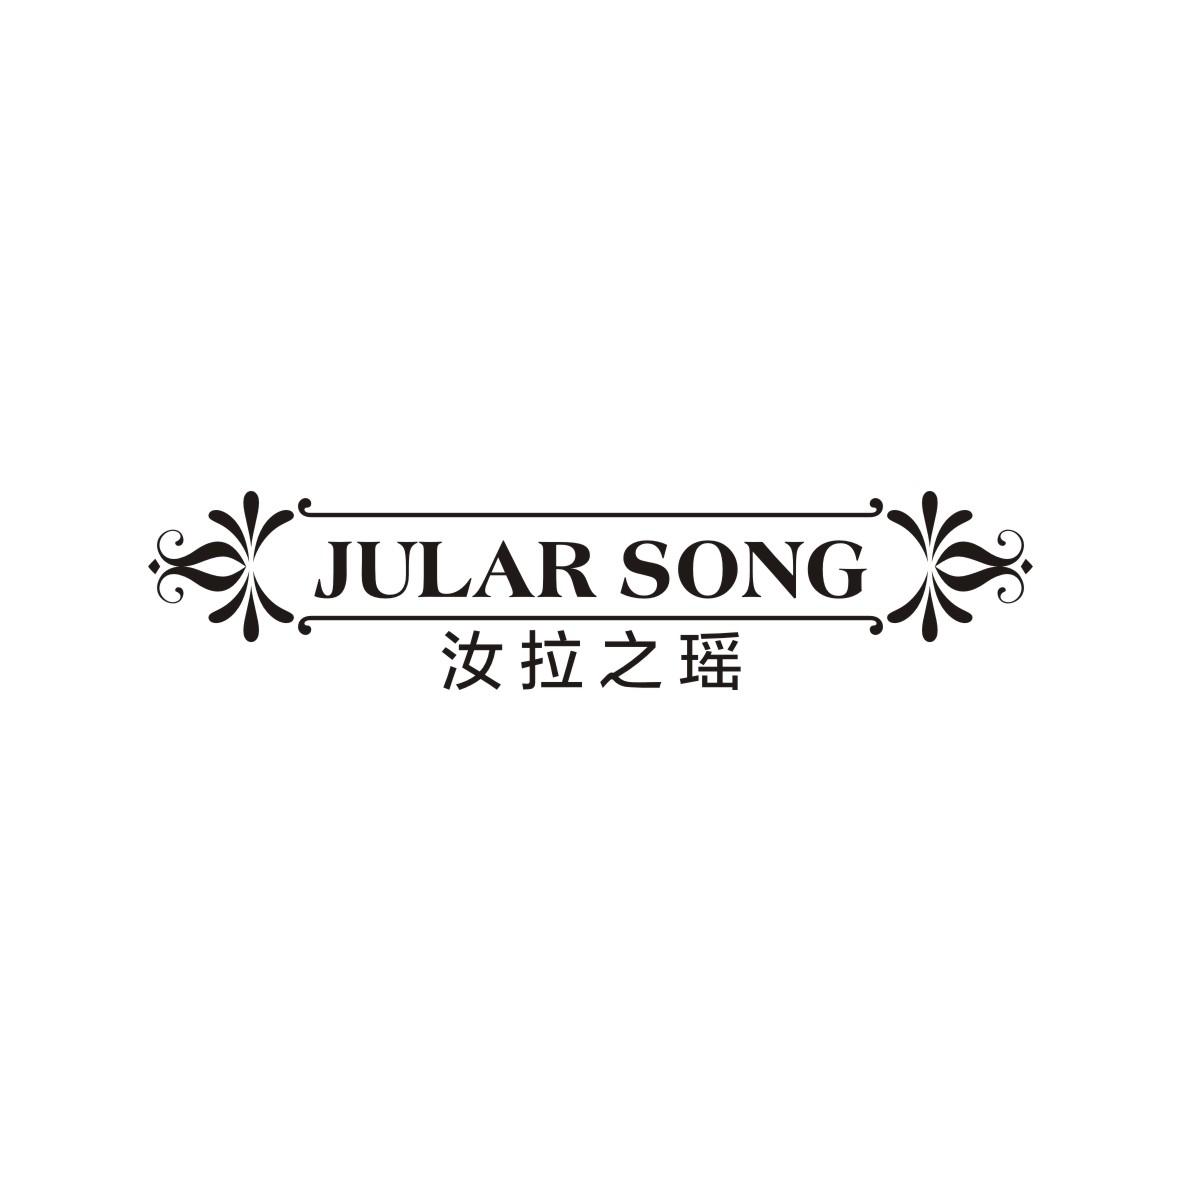 张小刚商标汝拉之瑶 JULAR SONG（33类）多少钱？